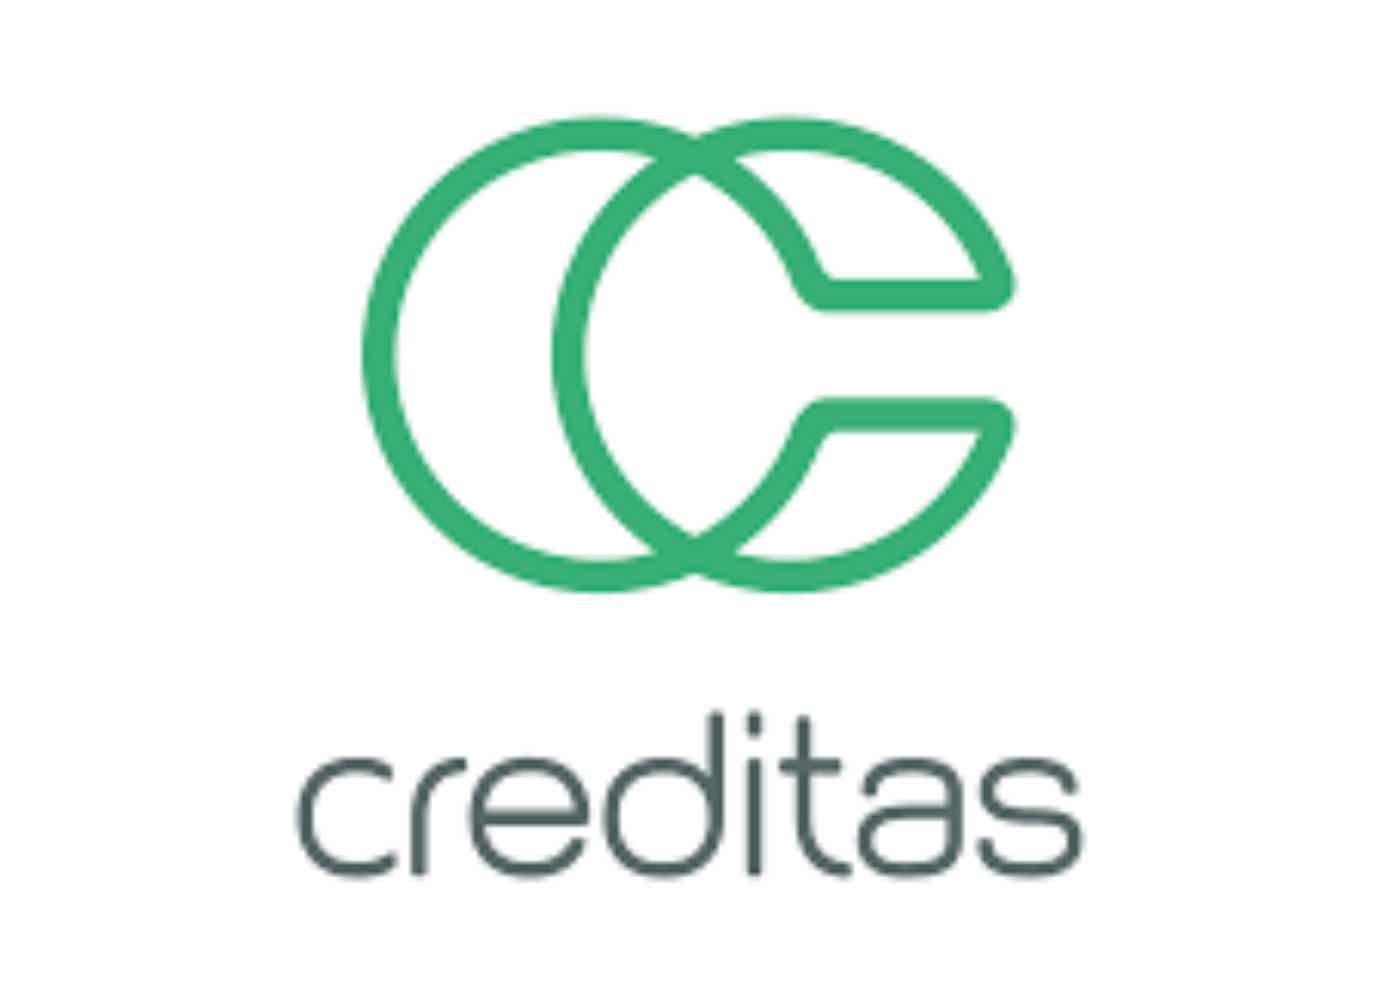 Logo da Creditas com dois "C" grandes em verde com fundo branco escrito "Creditas" em baixo em cinza.